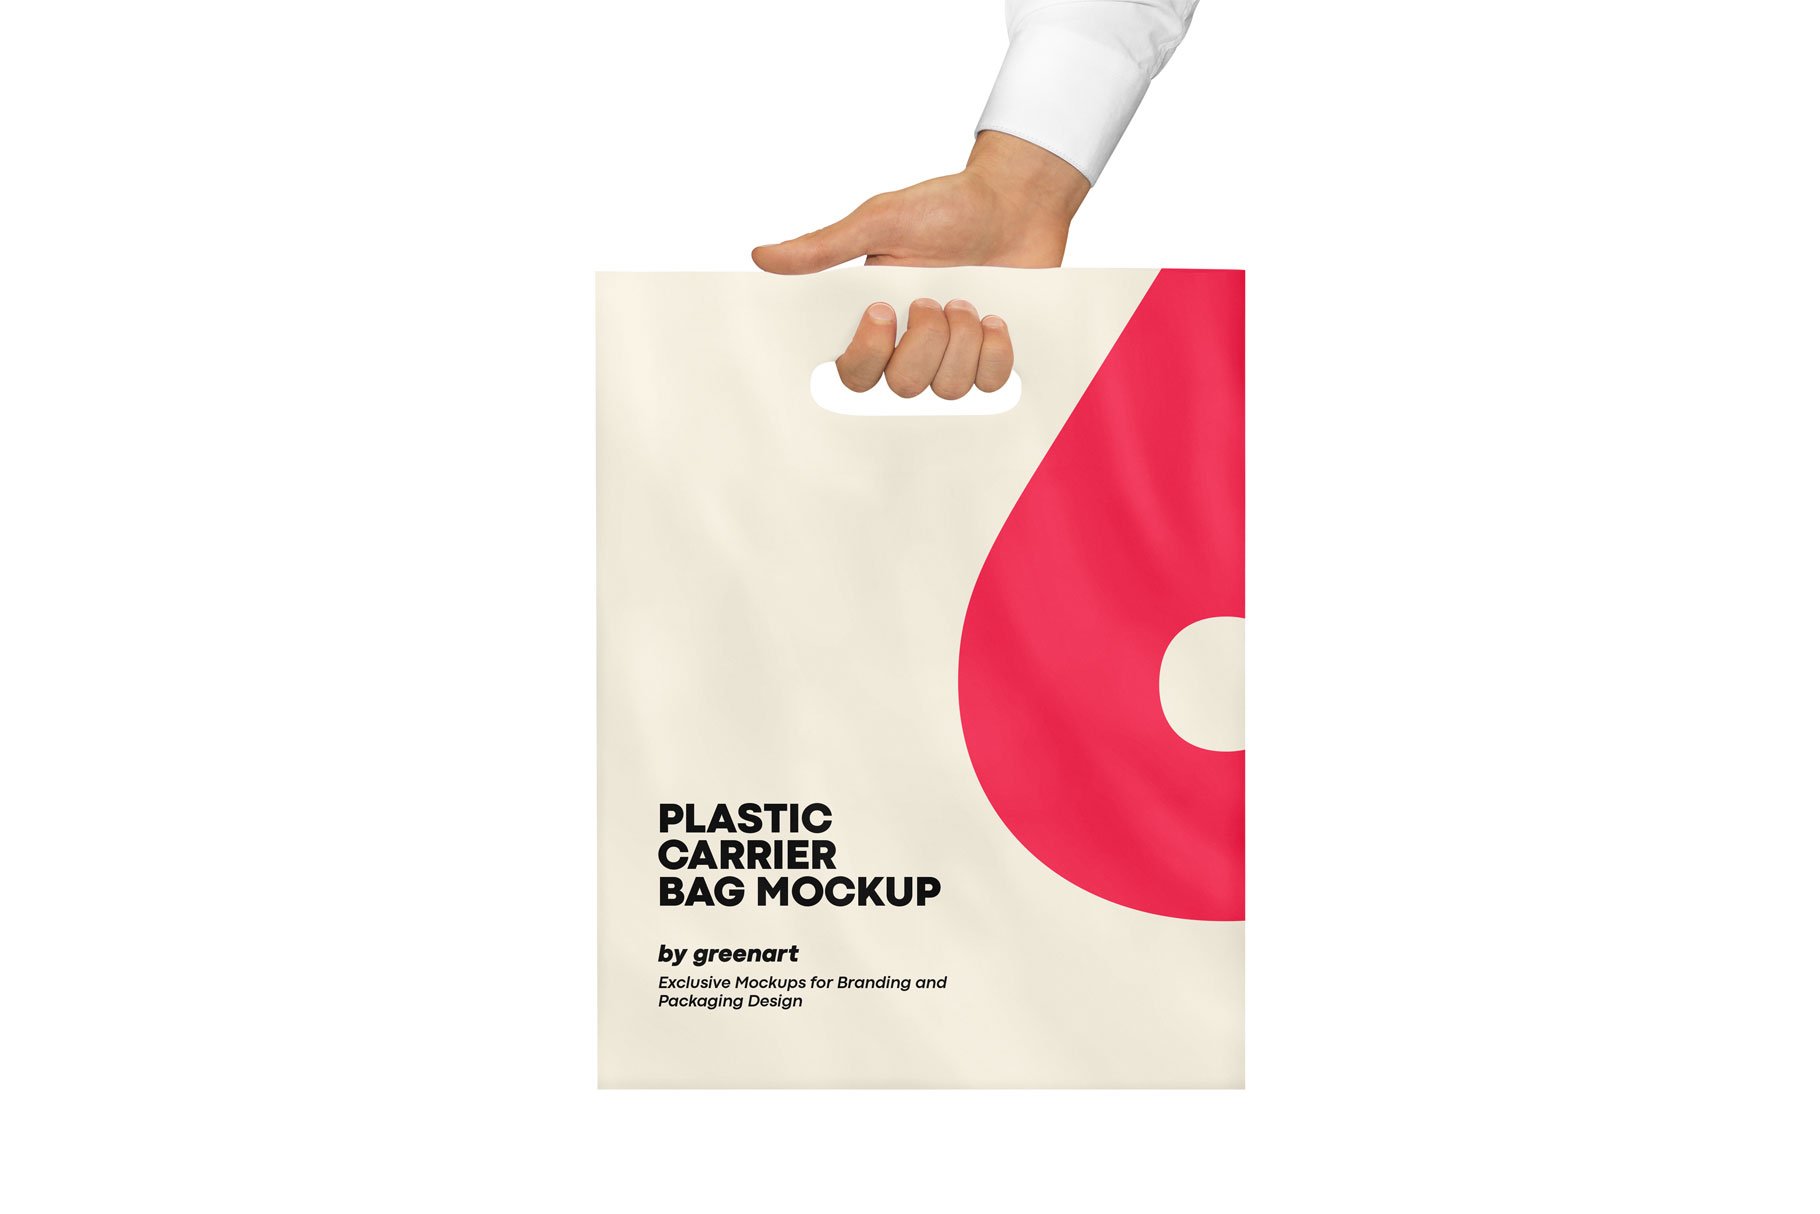 Plastic Carrier Bag Mockup cover image.